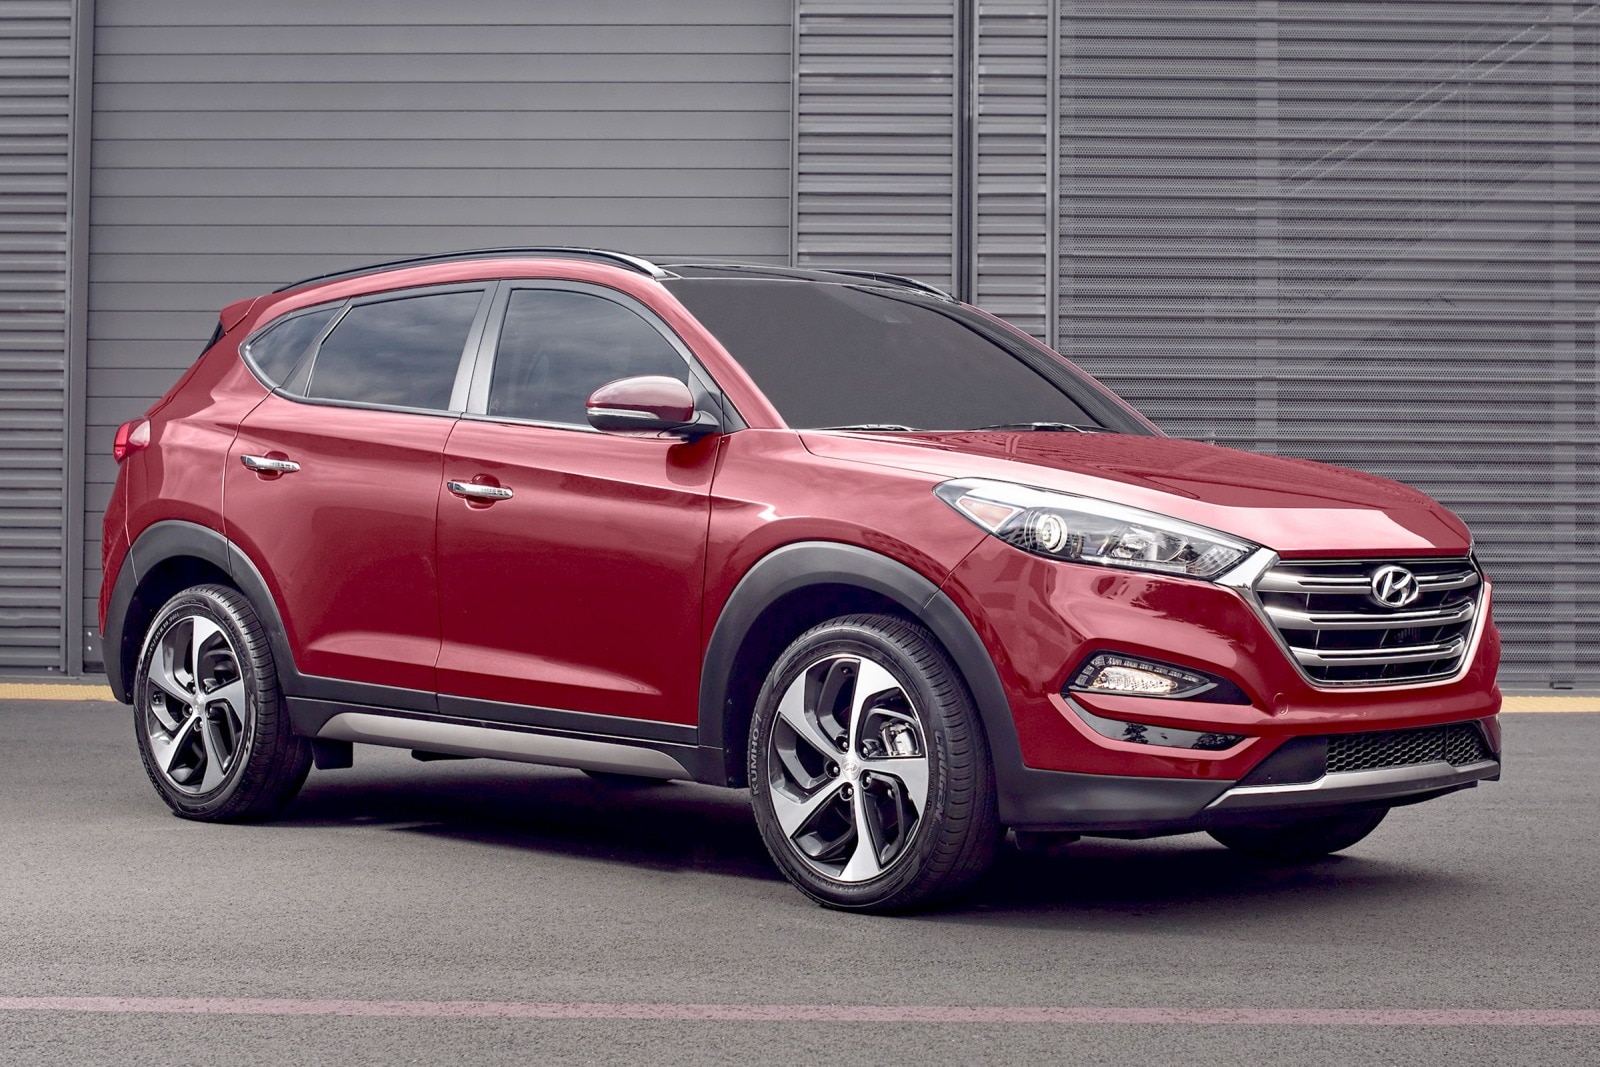 2016 Hyundai Tucson Review & Ratings | Edmunds